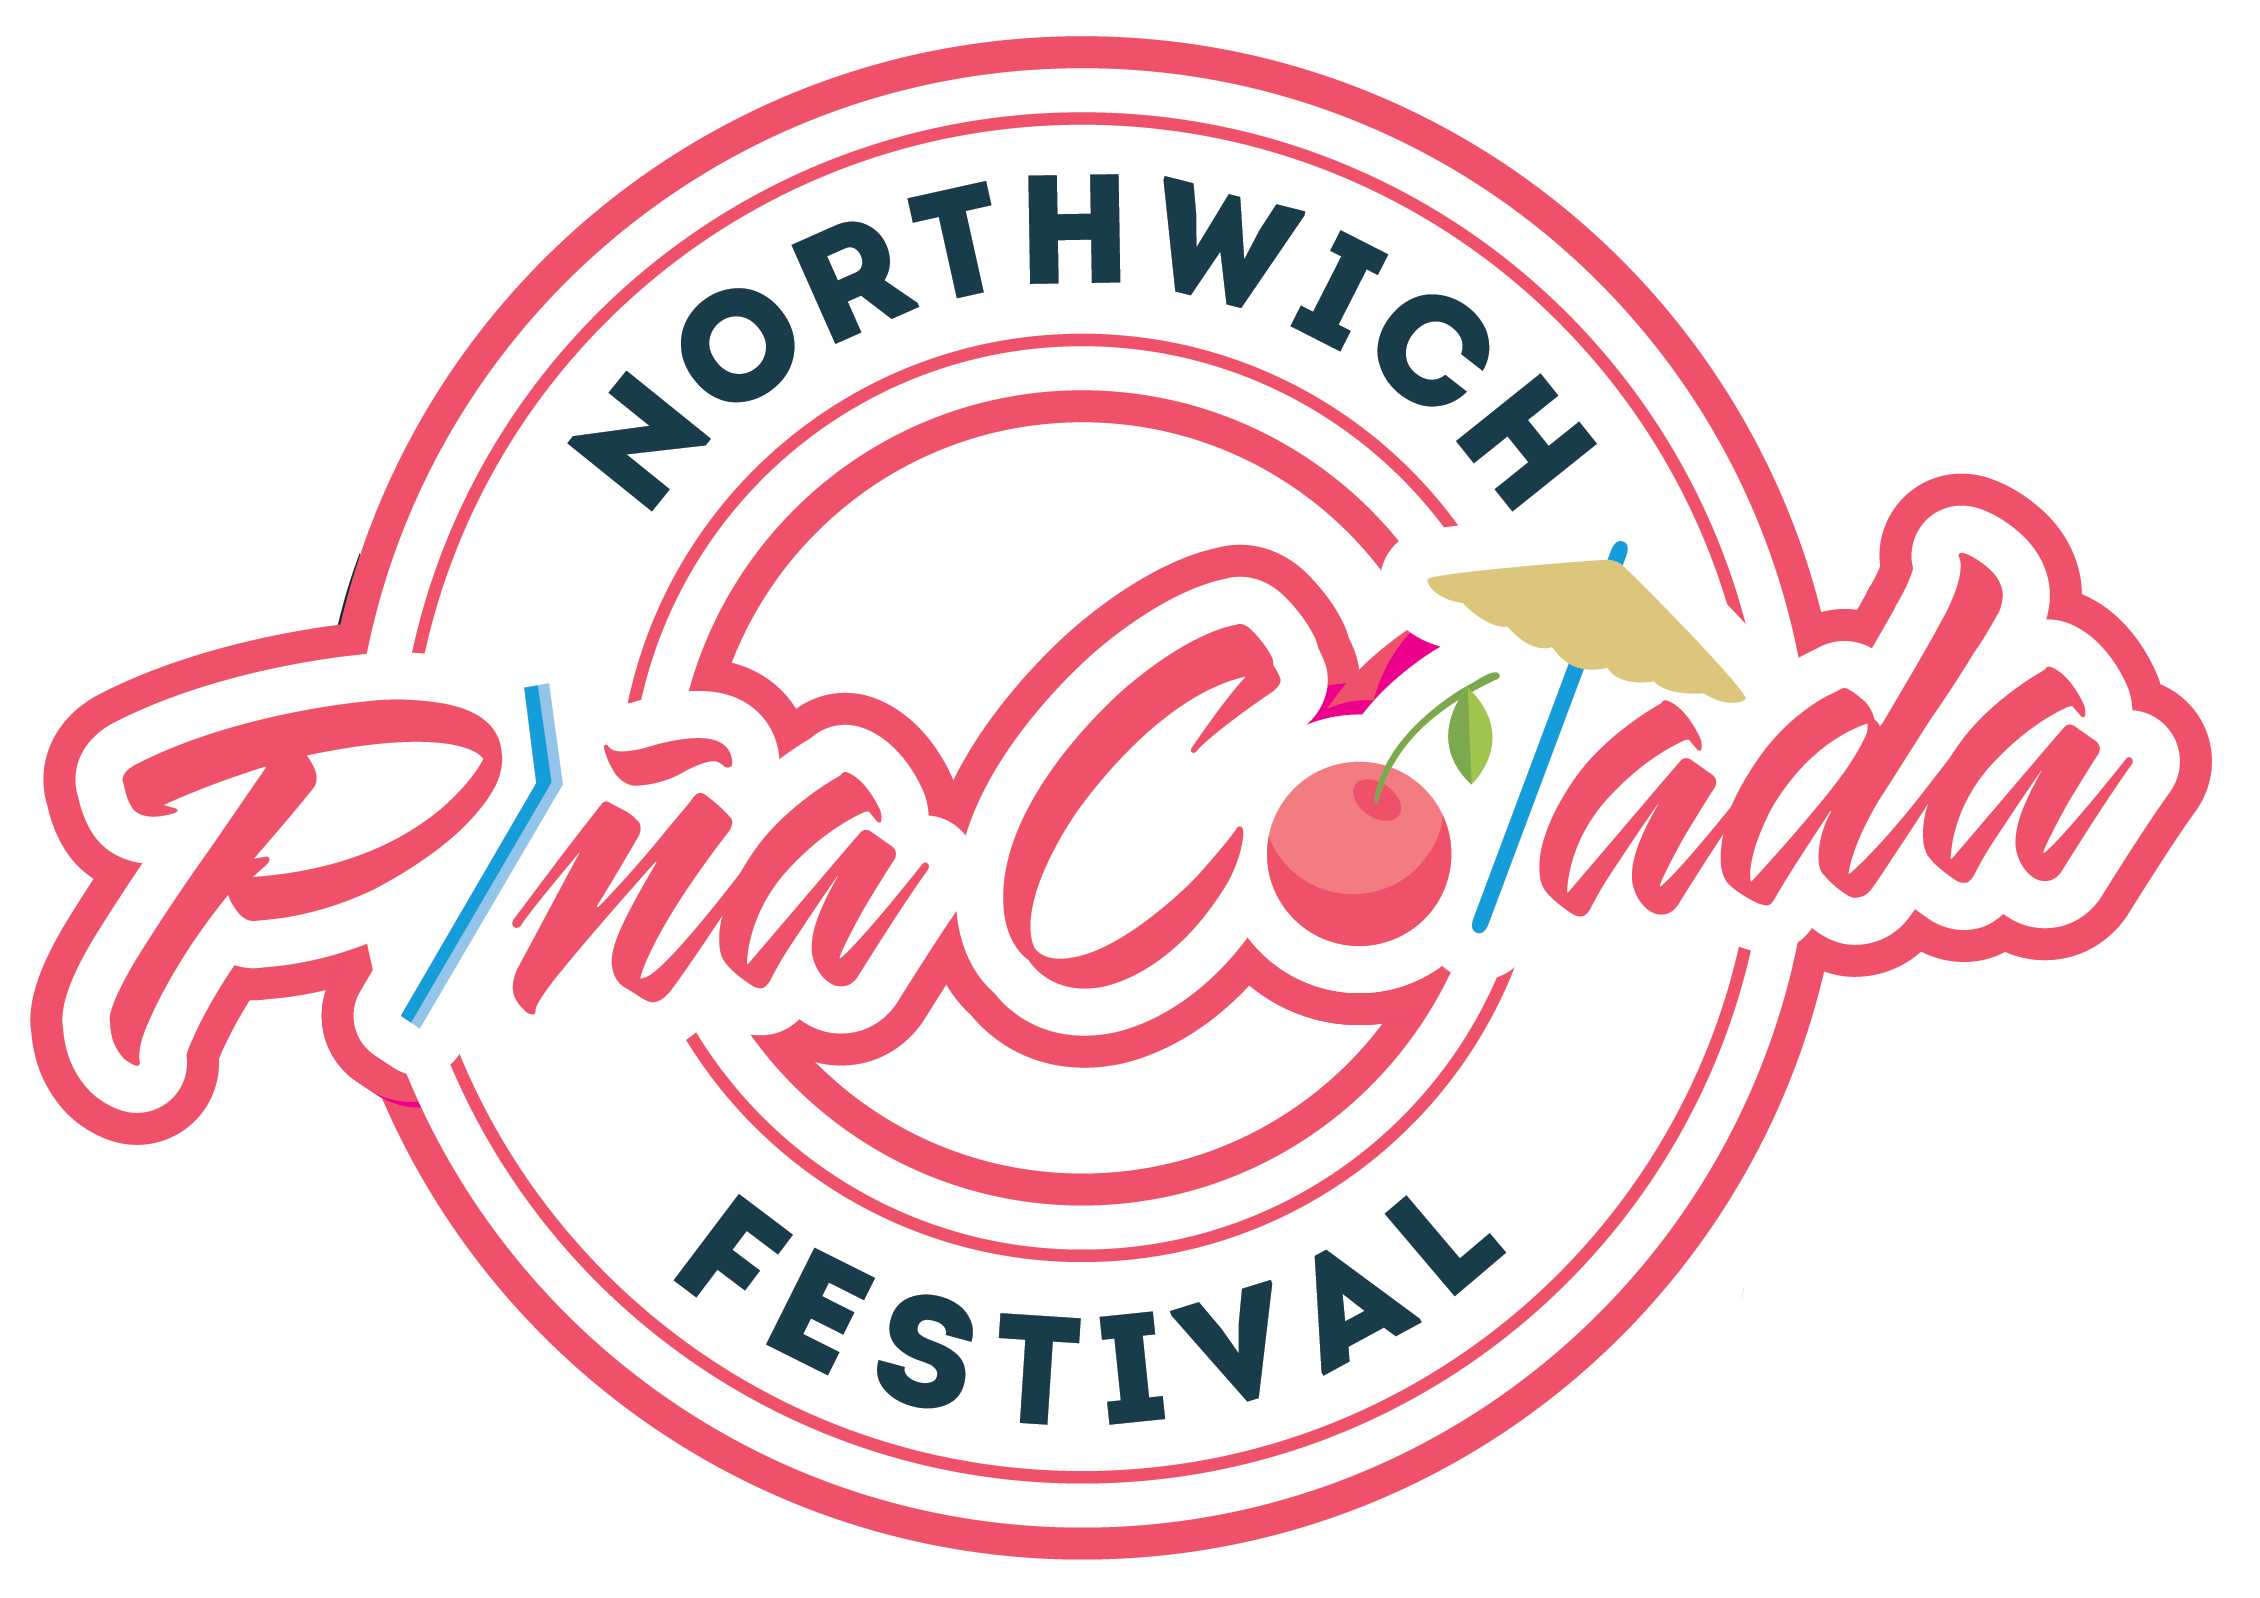 Northwich Pina Colada Festival